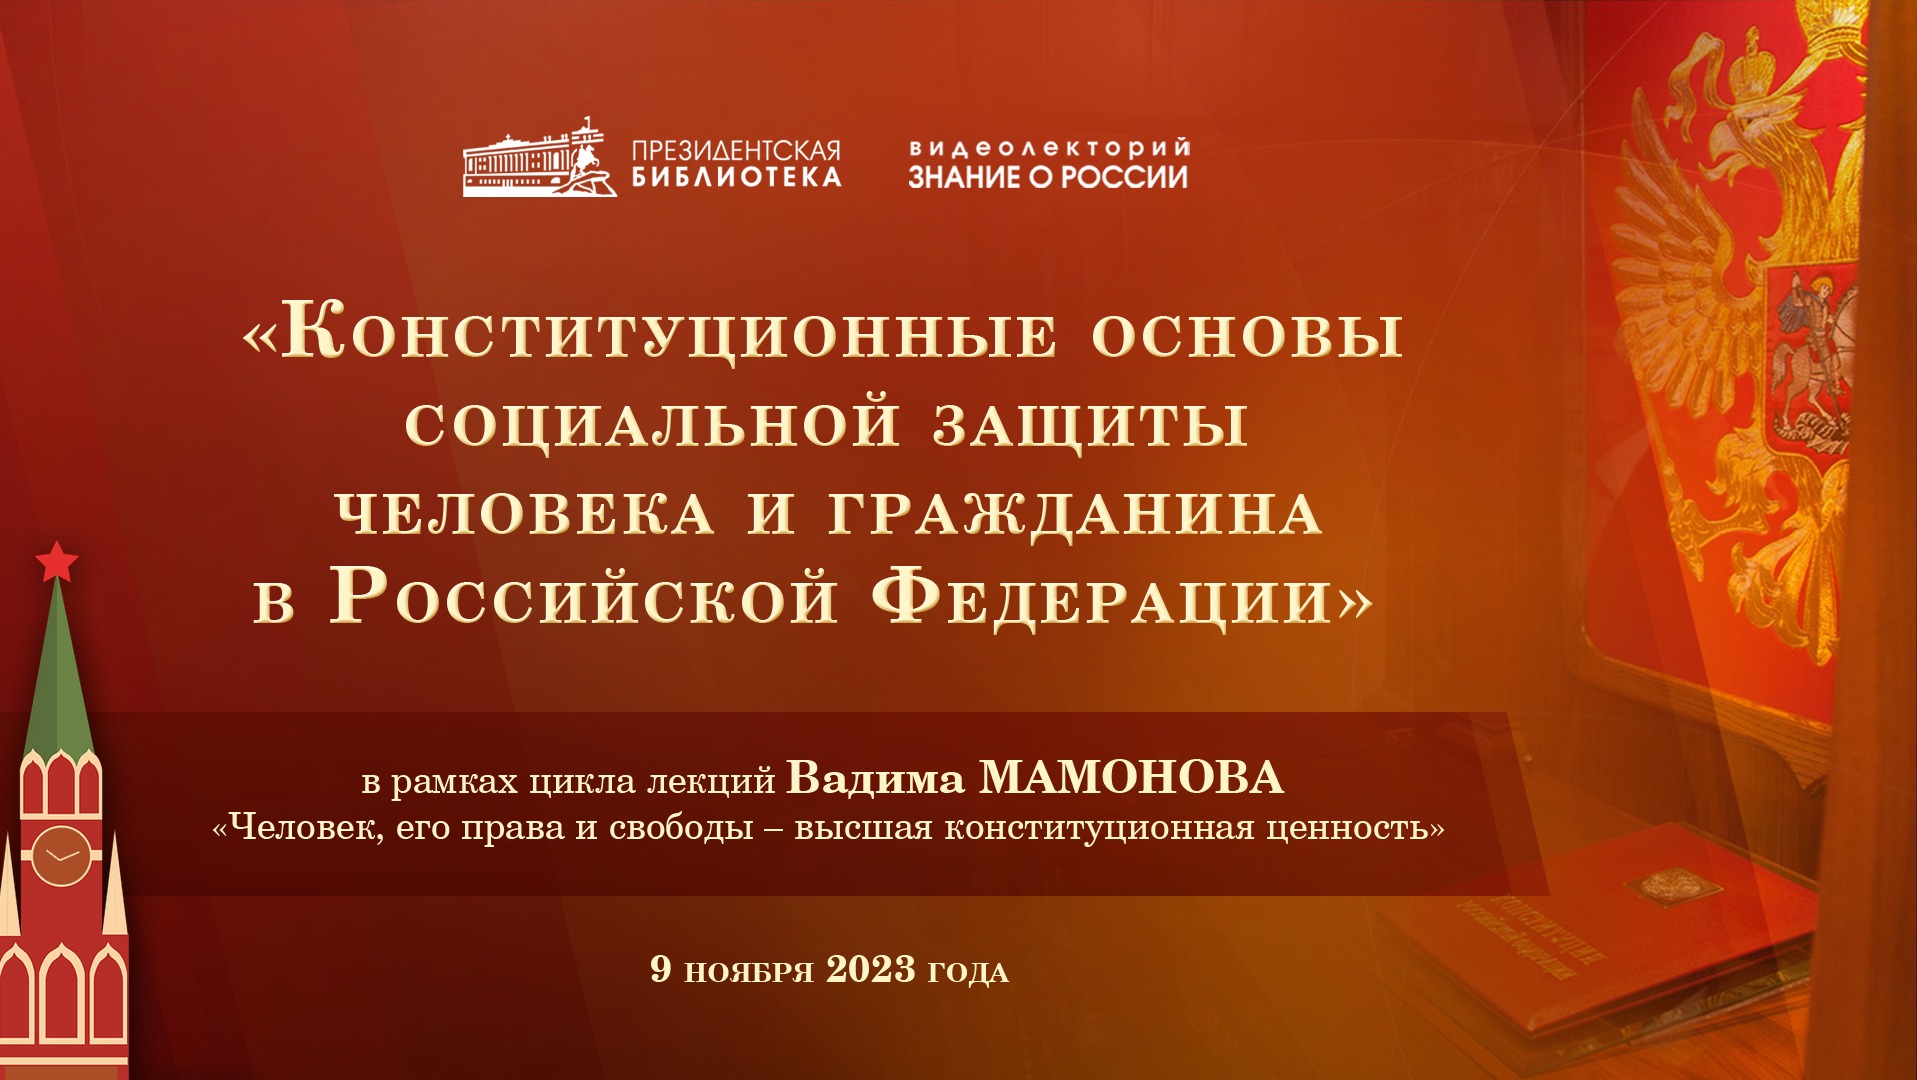 Видеолекция «Конституционные основы социальной защиты человека и гражданина в Российской Федерации»